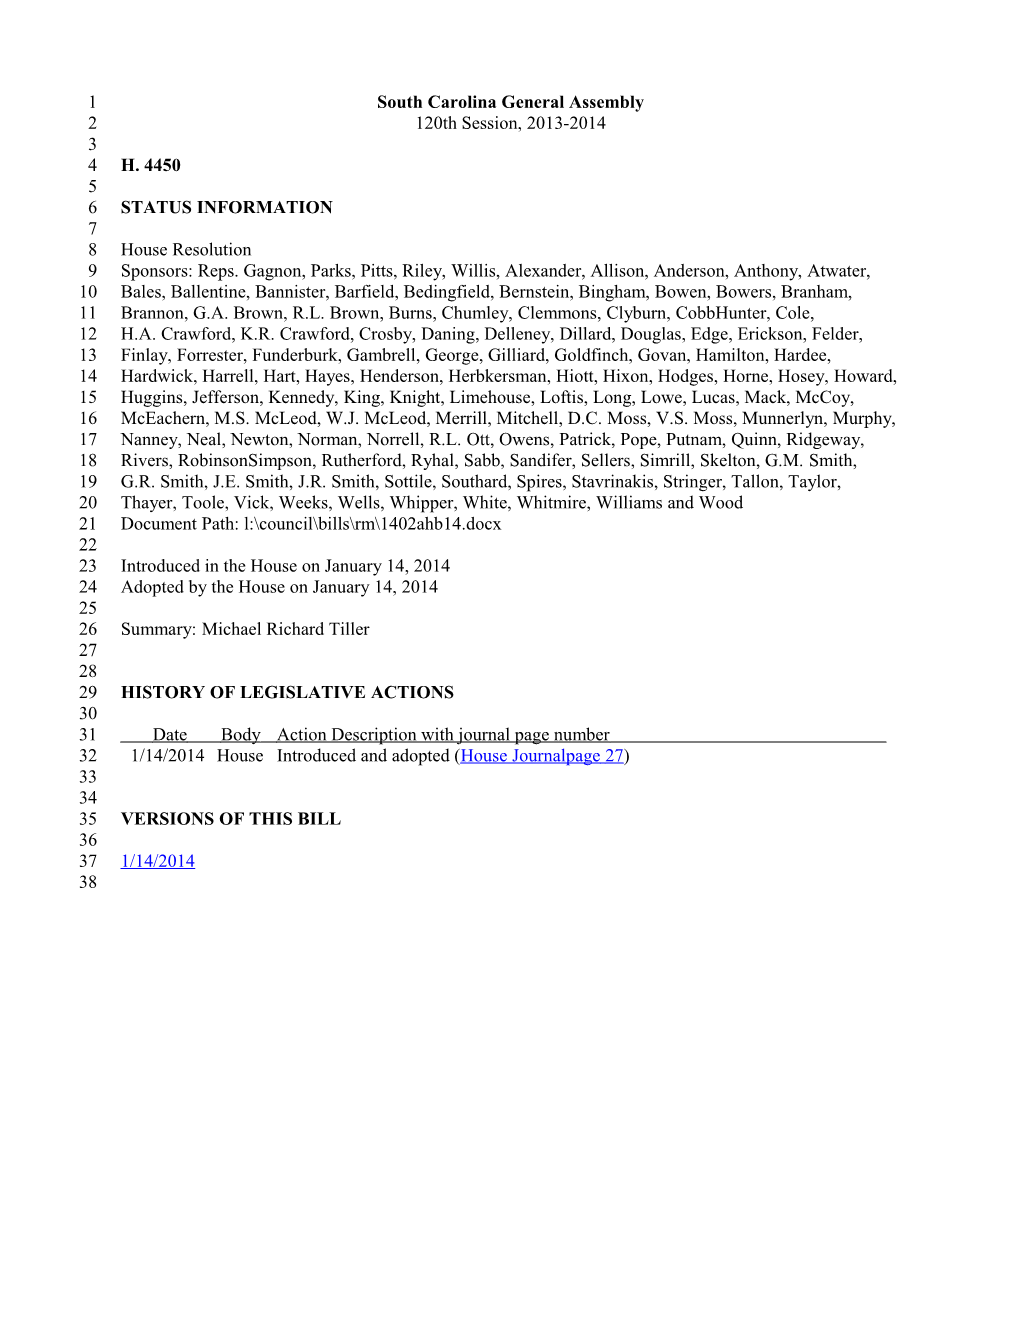 2013-2014 Bill 4450: Michael Richard Tiller - South Carolina Legislature Online